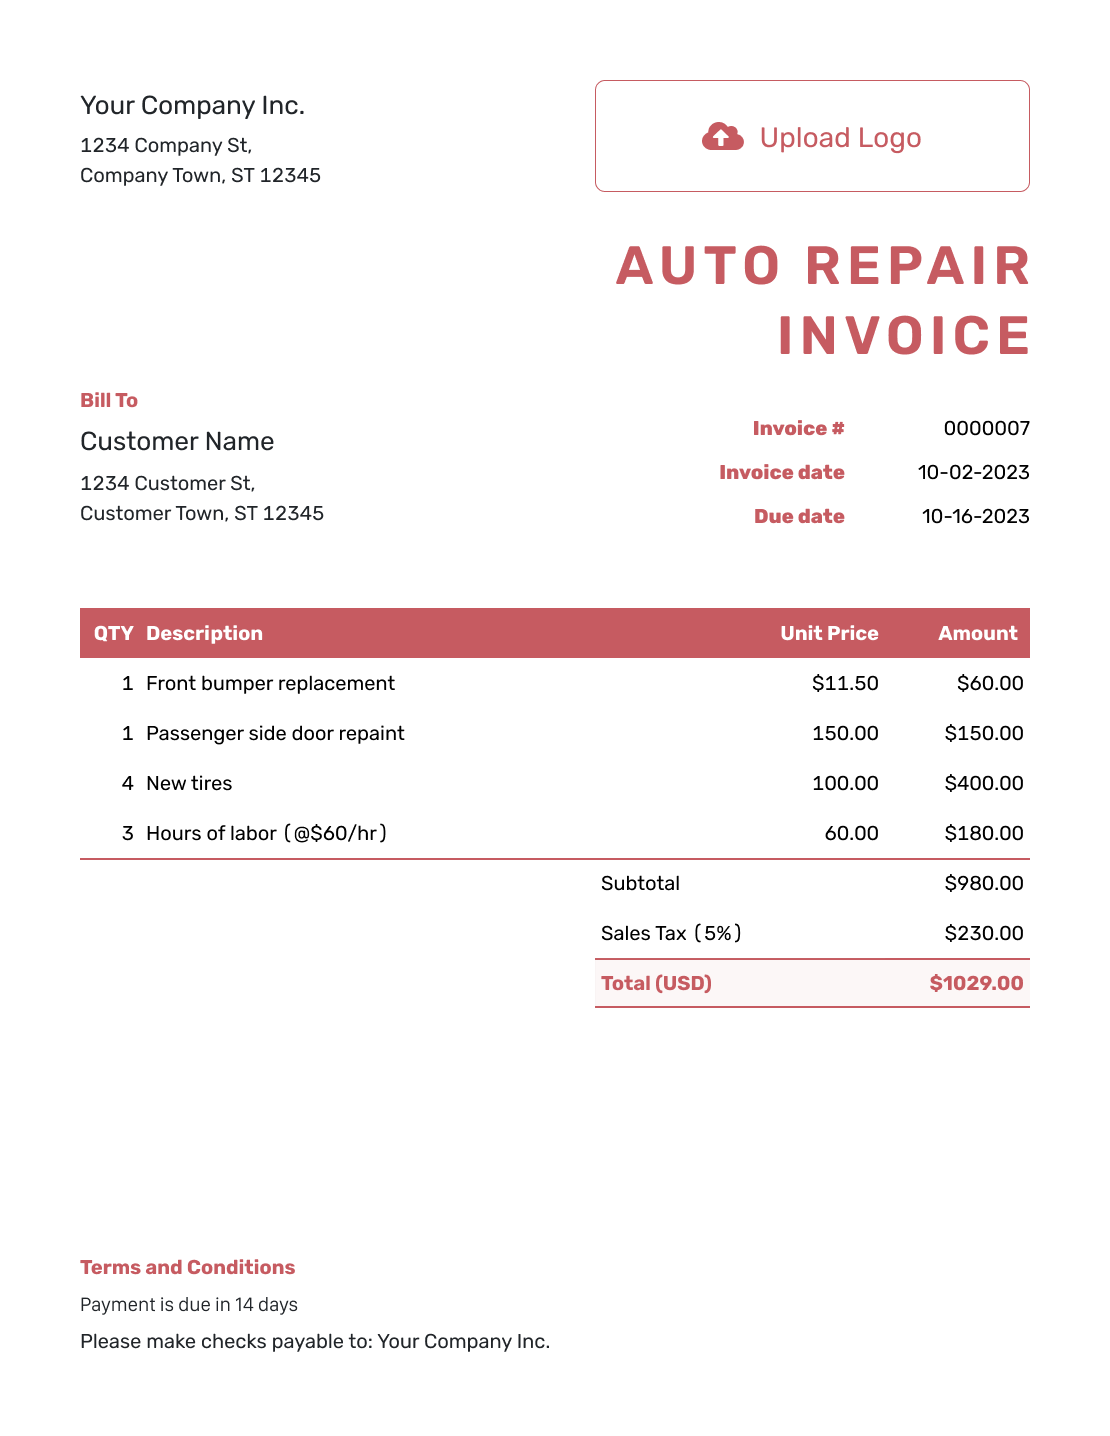 Itemized Auto Repair Invoice Template